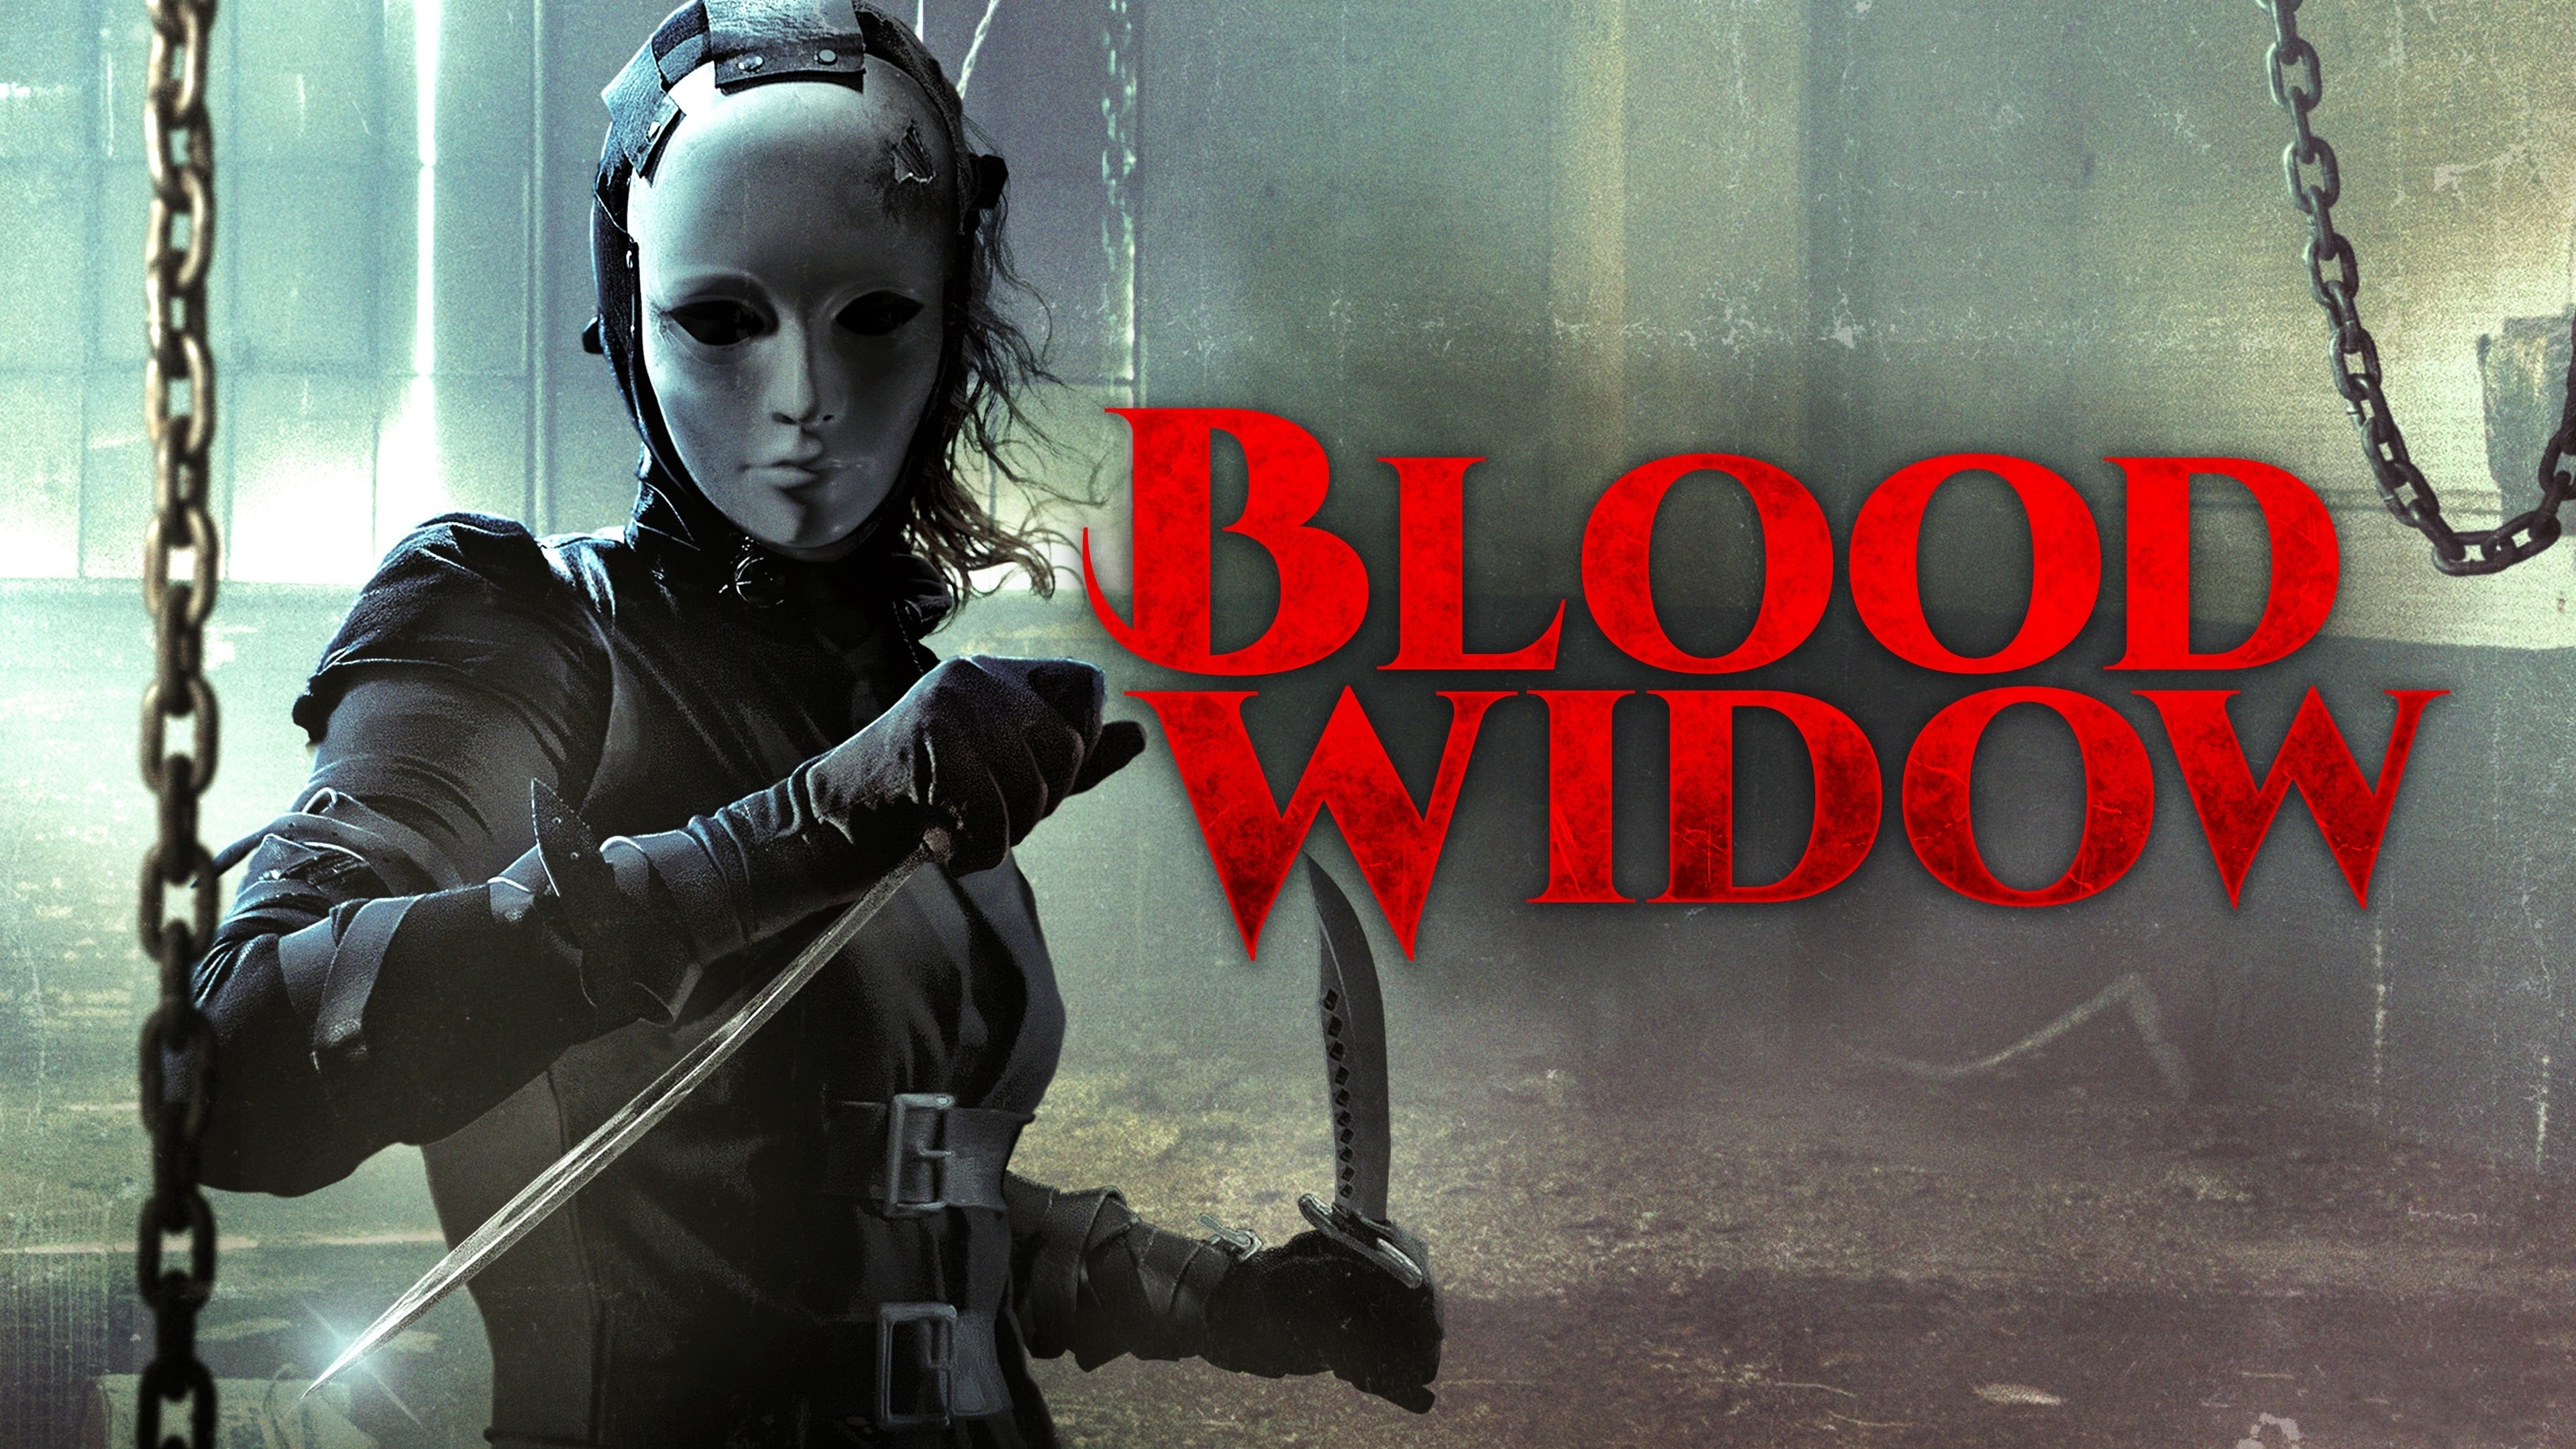 Mặt nạ sát nhân - Blood widow